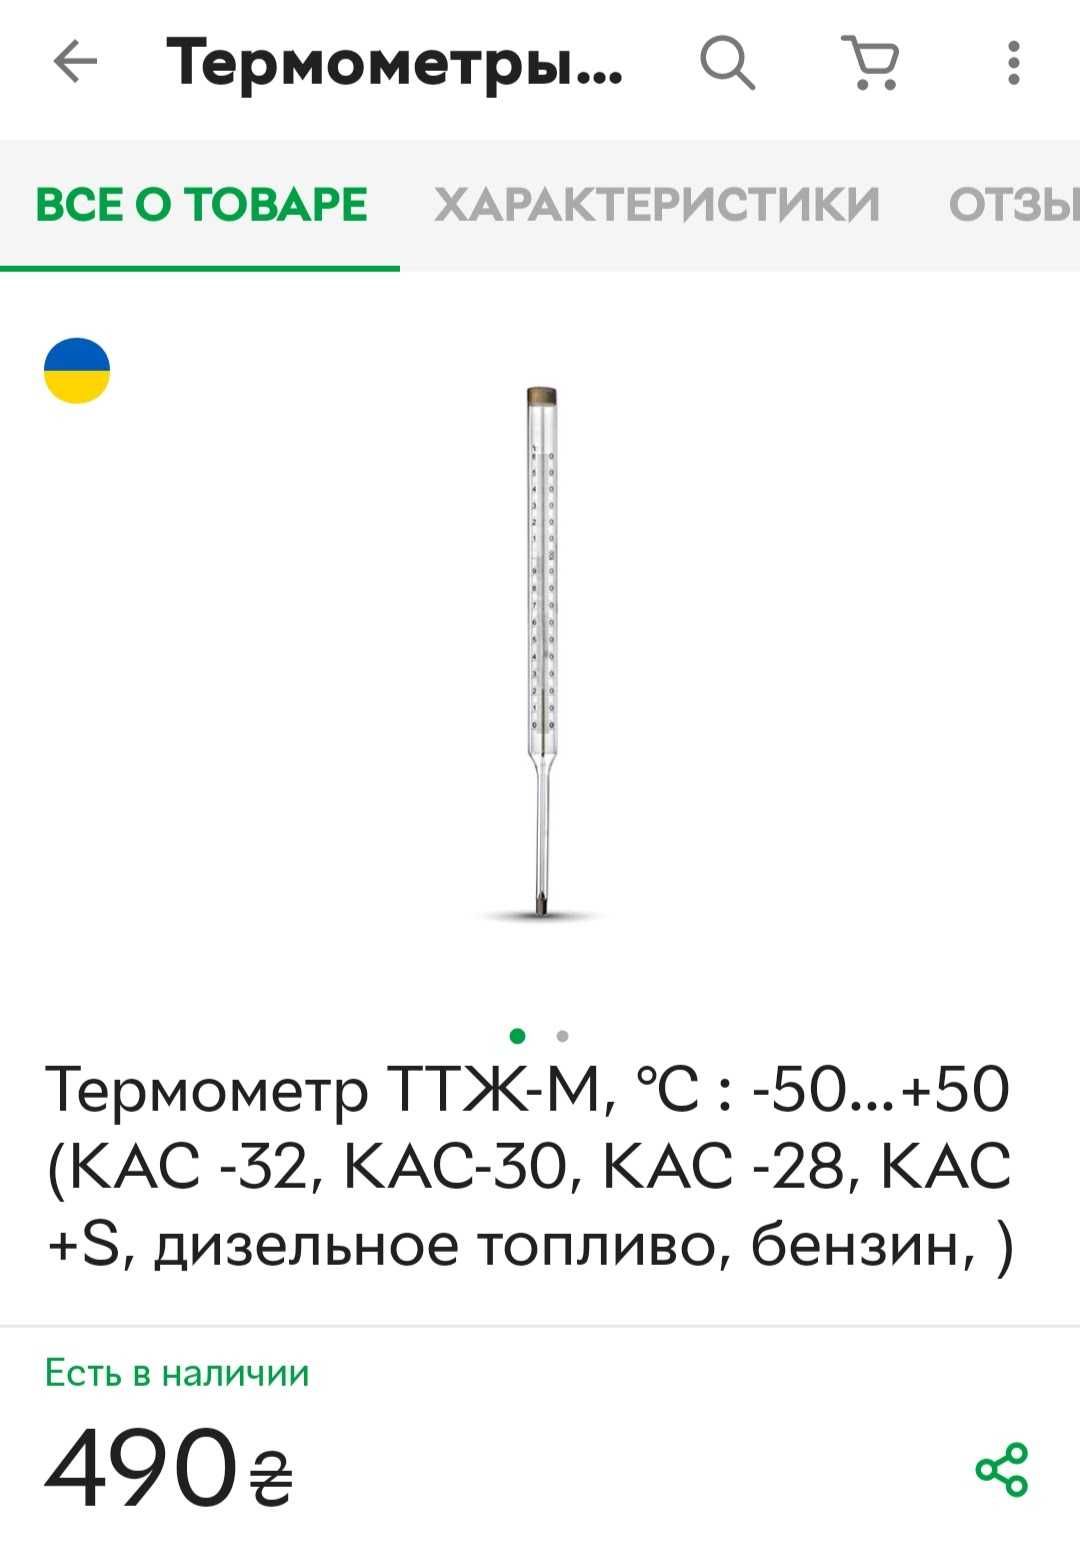 Термометр ТТЖ - М 0 - 50 градусів Цельсія